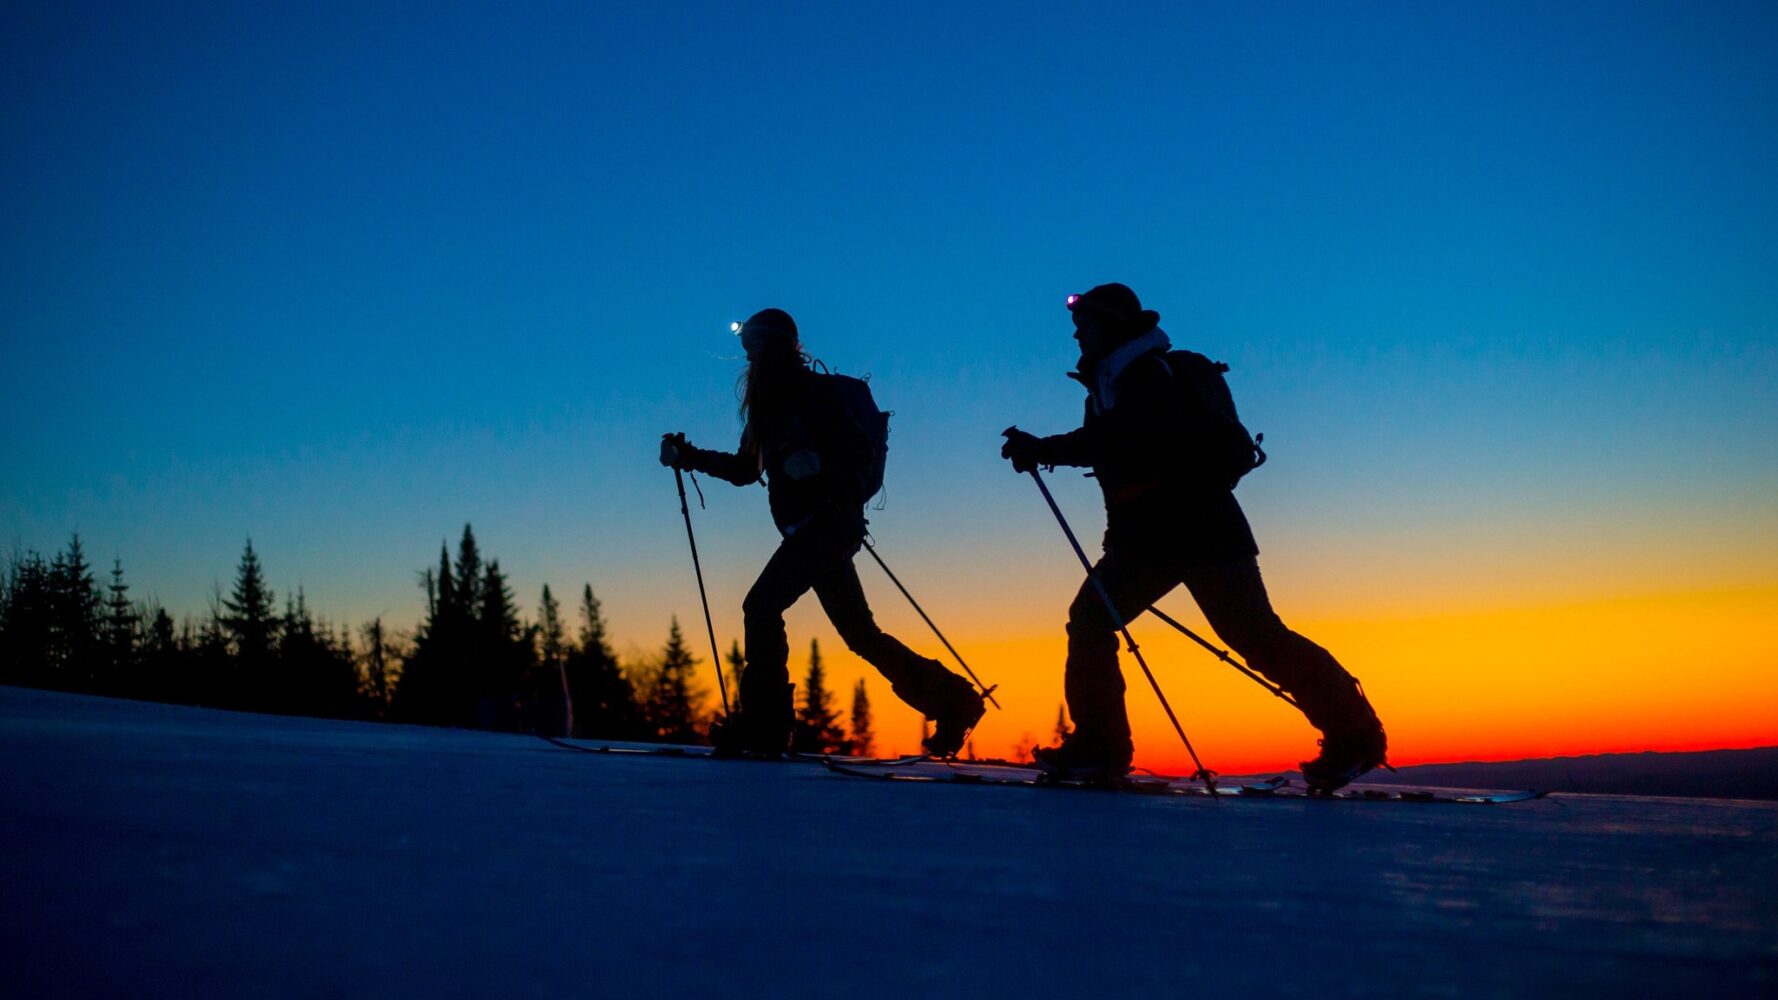 Deux skieurs en rando alpine au coucher de soleil